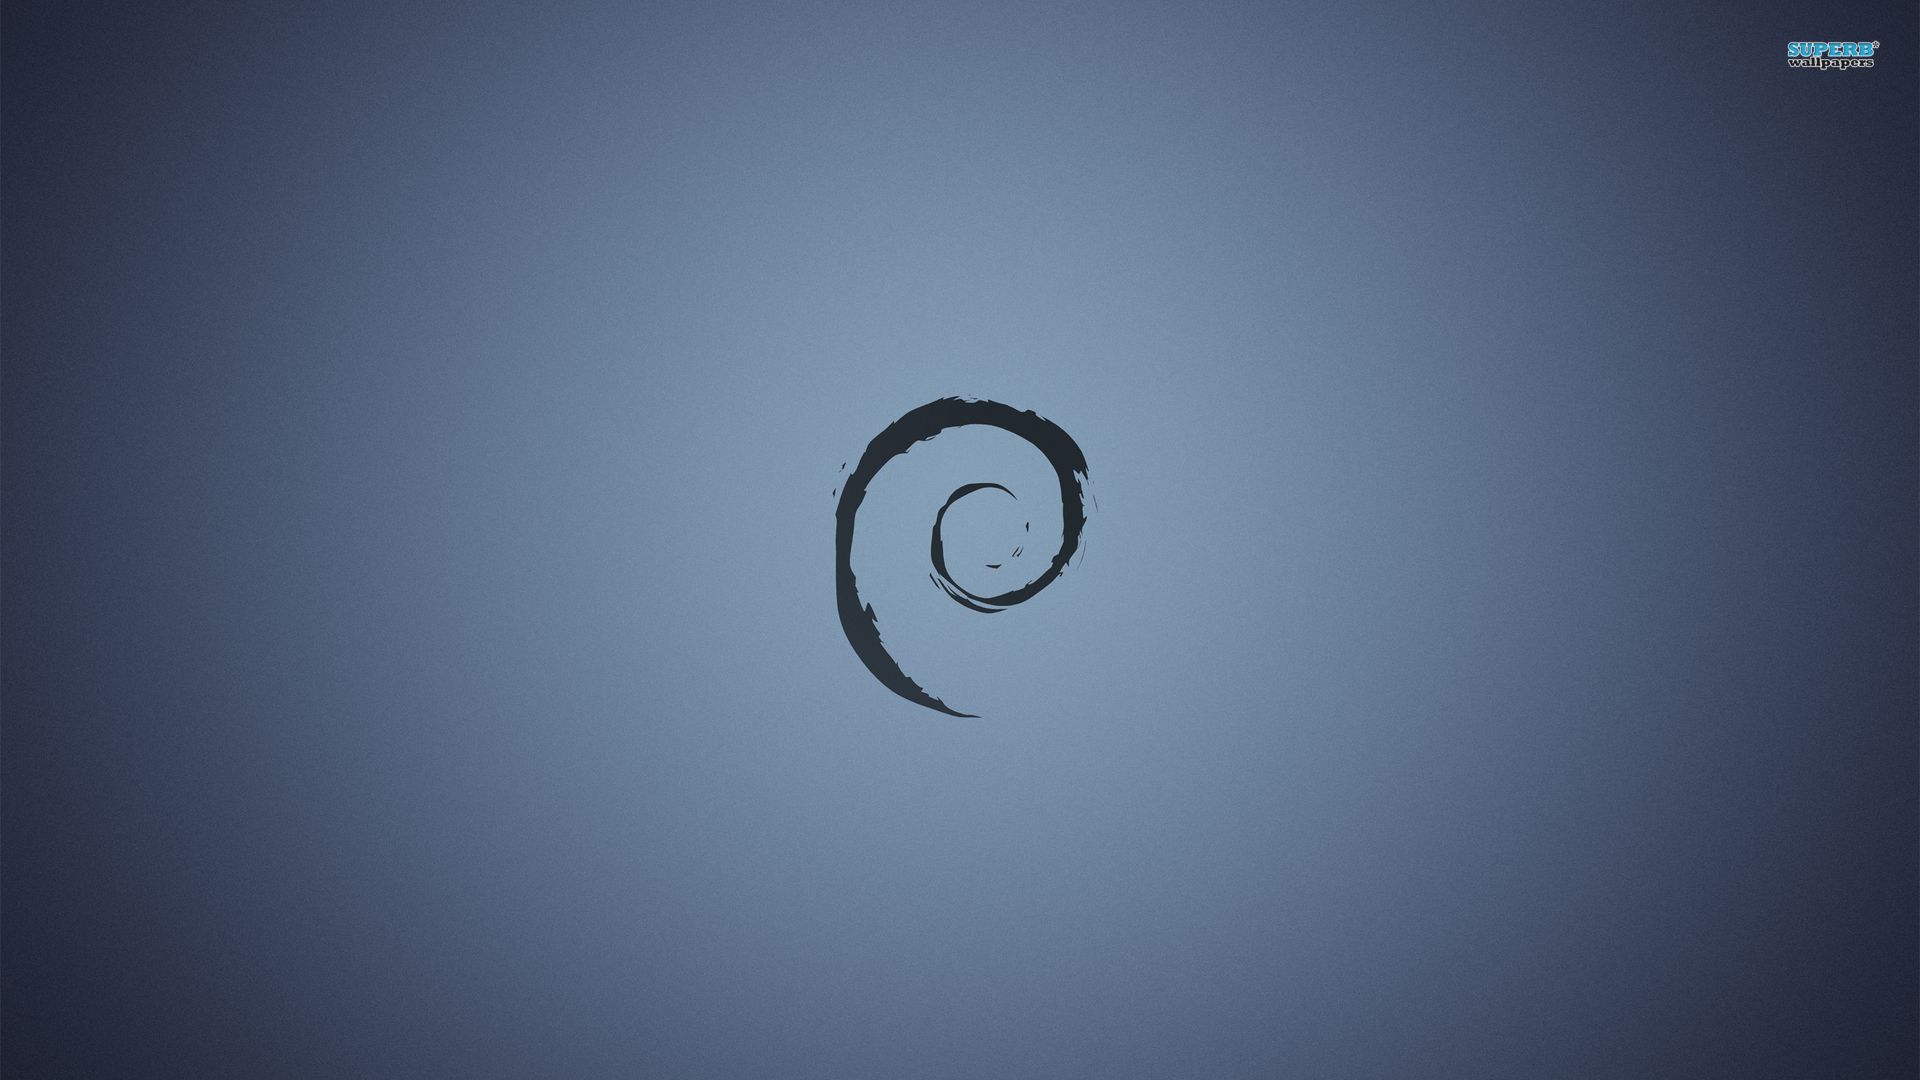 Debian wallpaper - Computer wallpapers - #7271